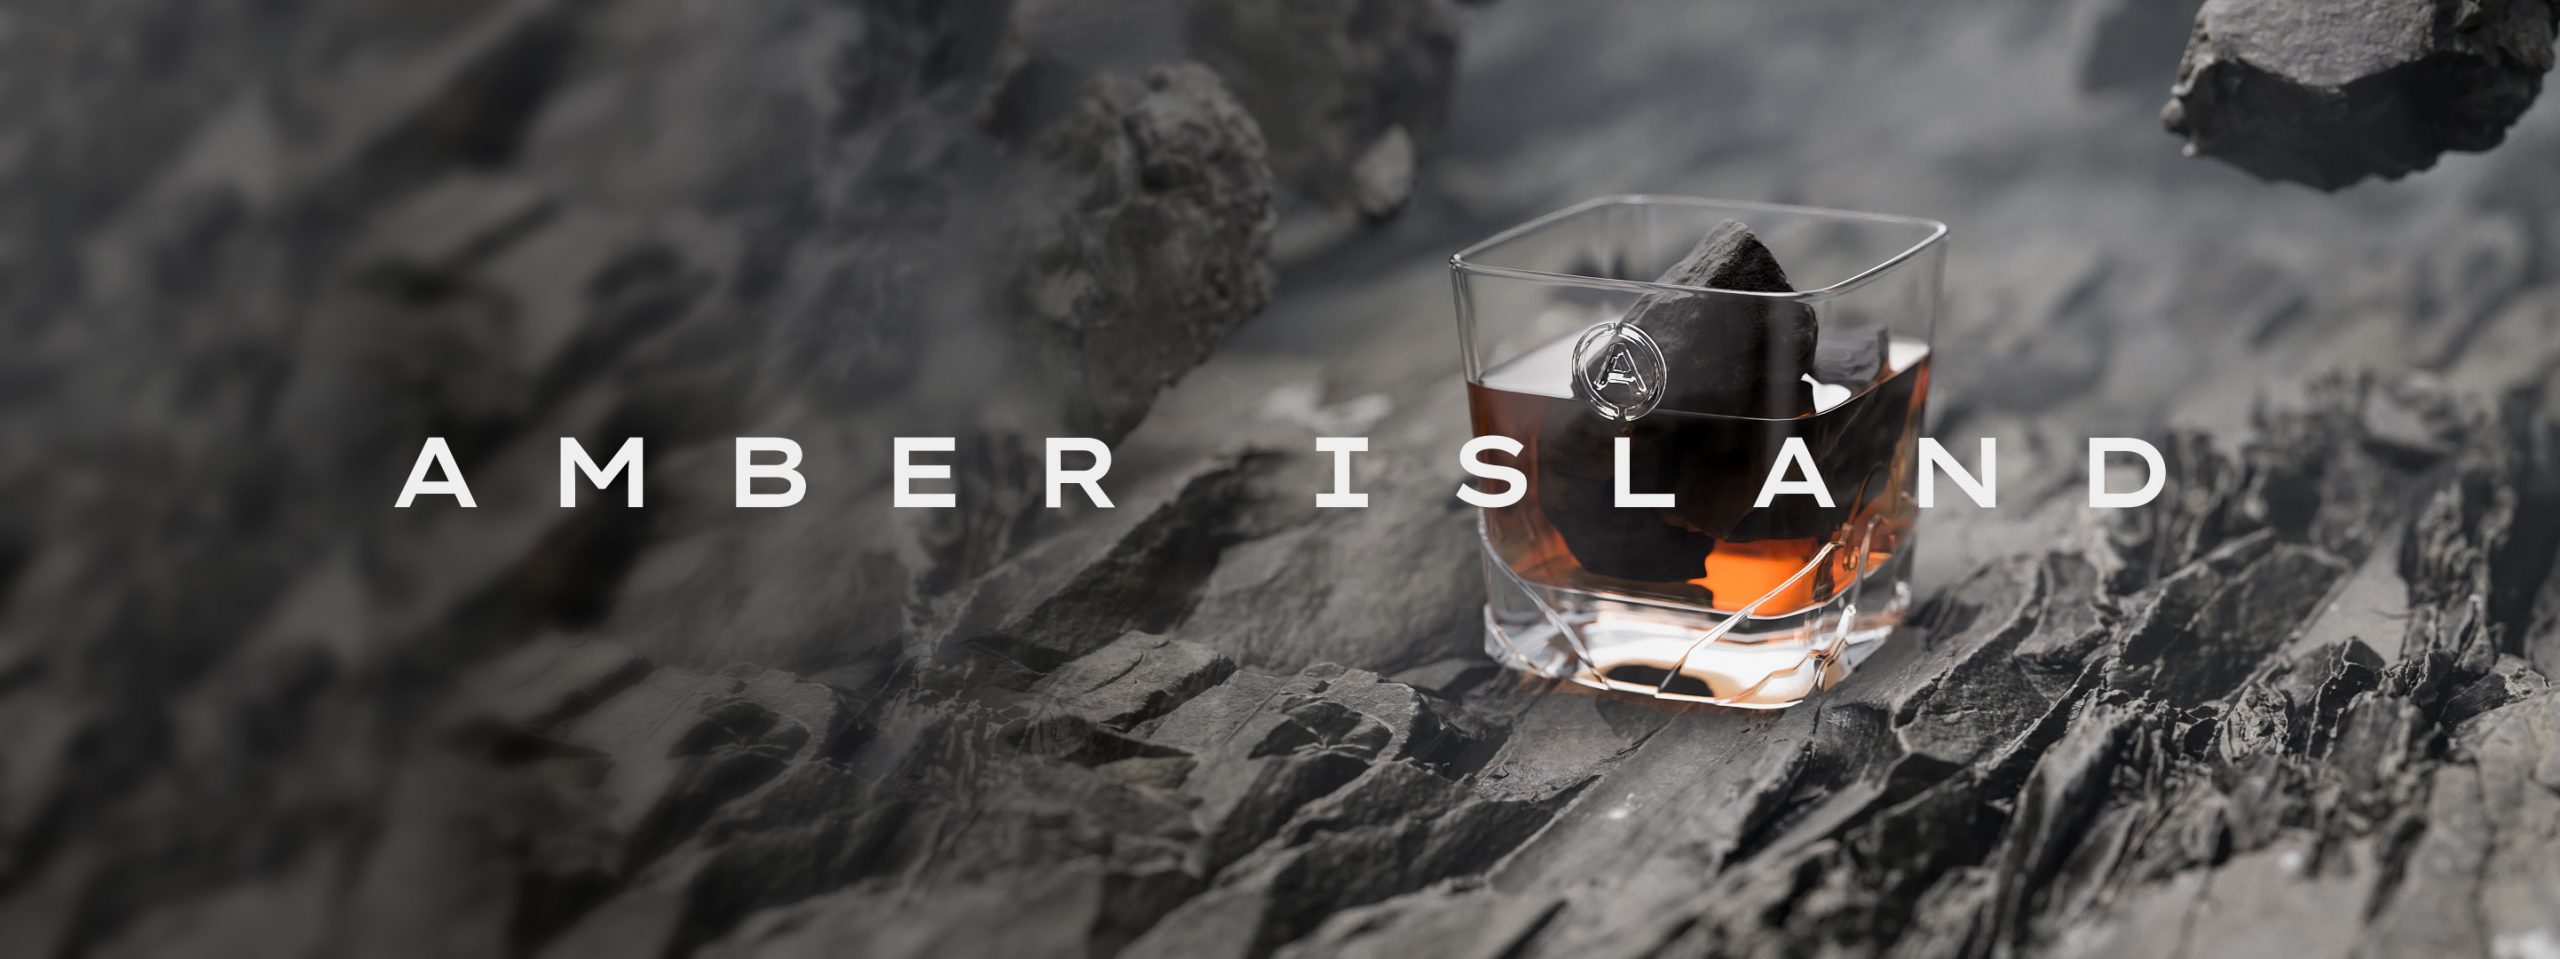 Imagen del texto de Amber Island y whisky en vasos